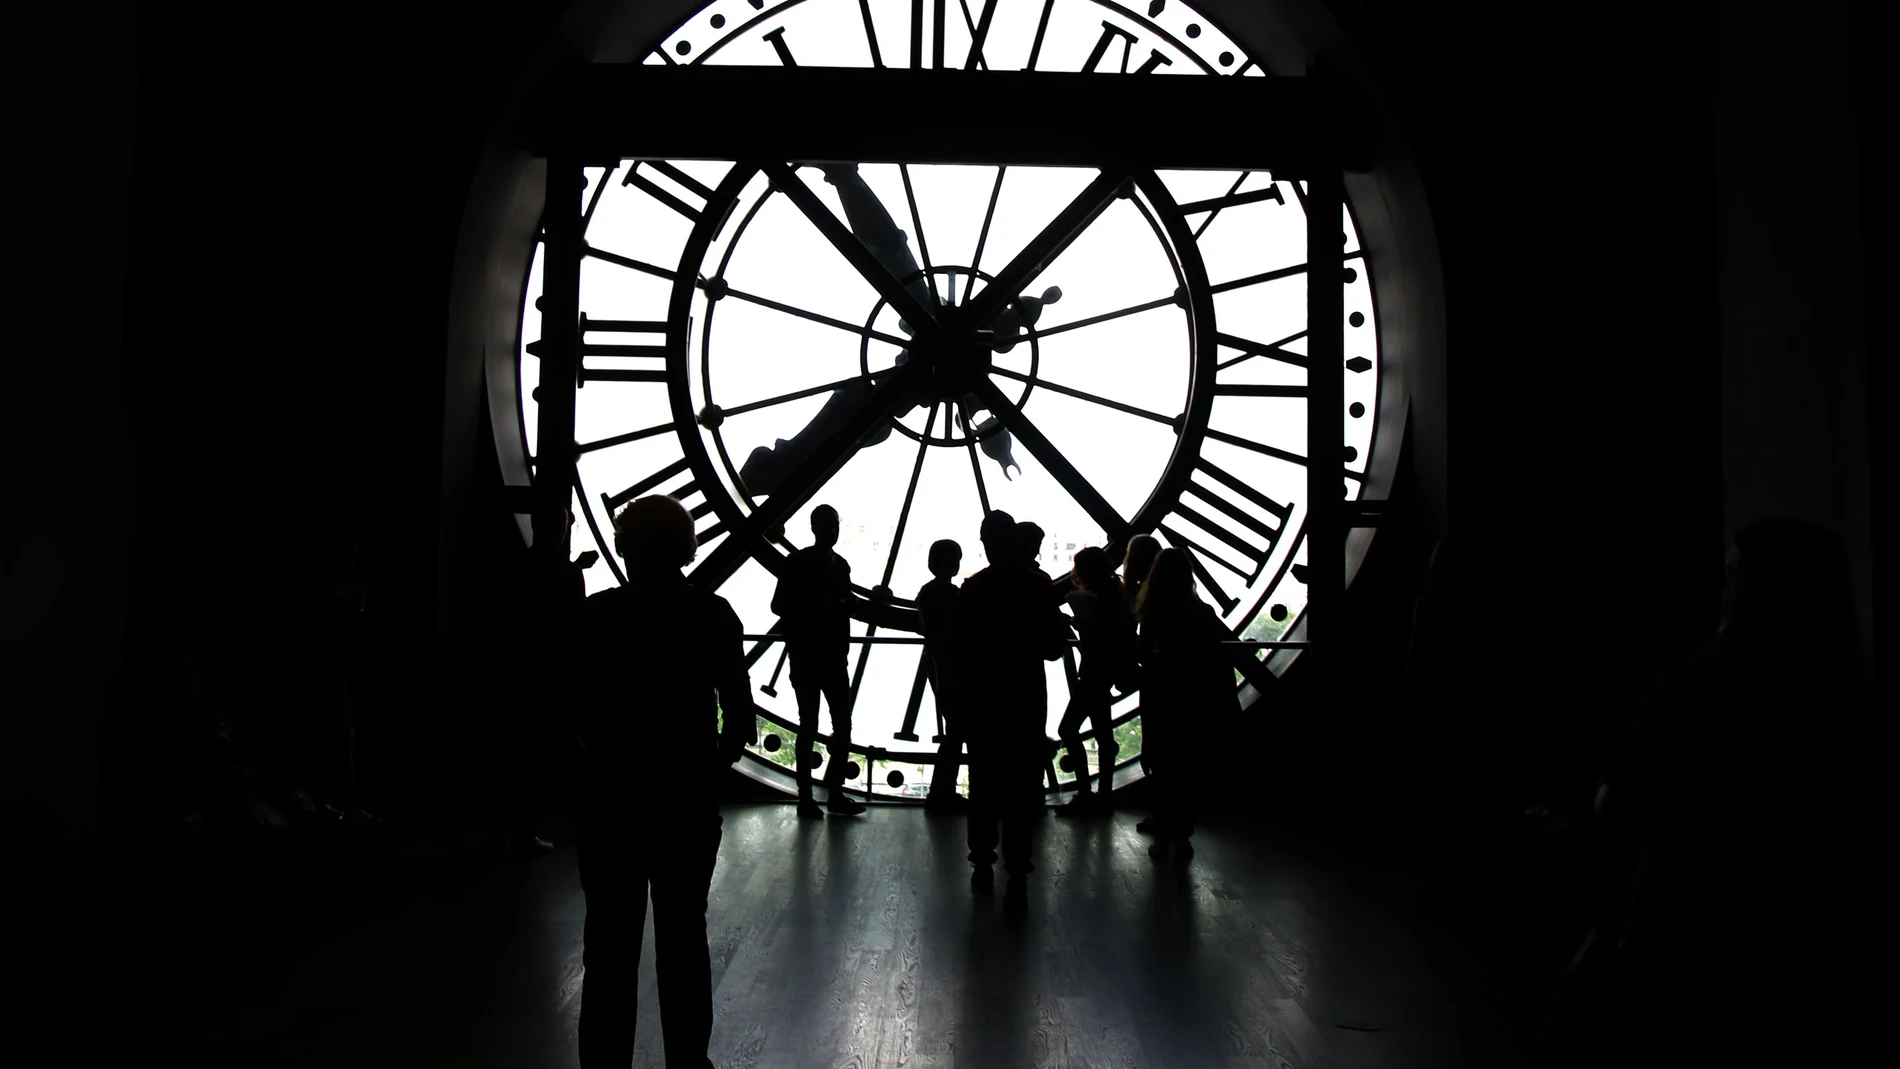 Reloj del Museo de Orsay, en París